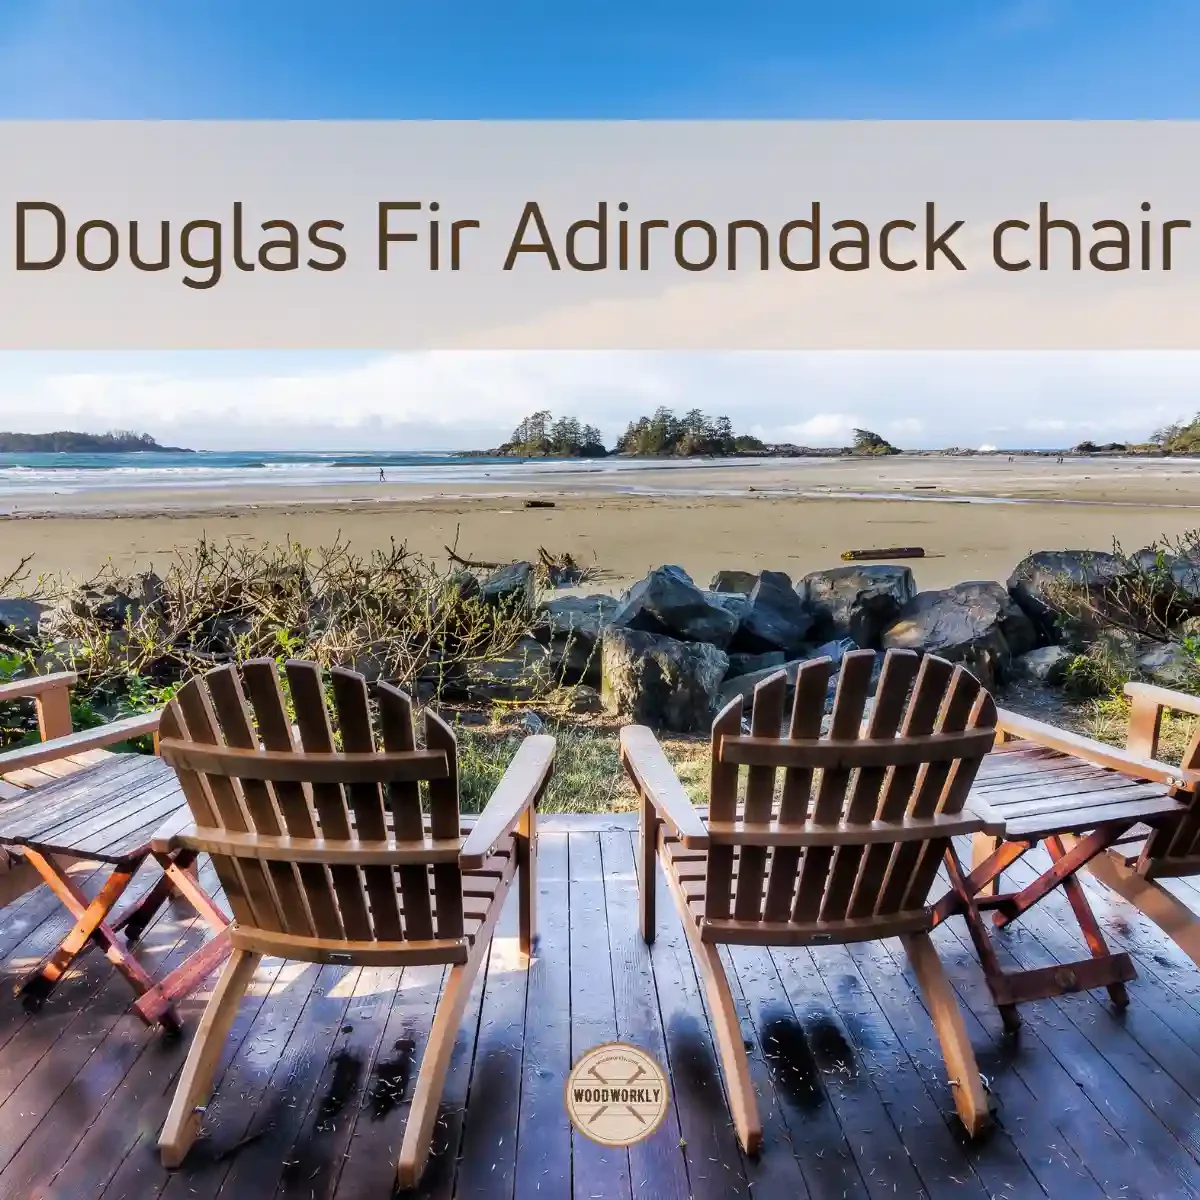 Douglas Fir Adirondack chair